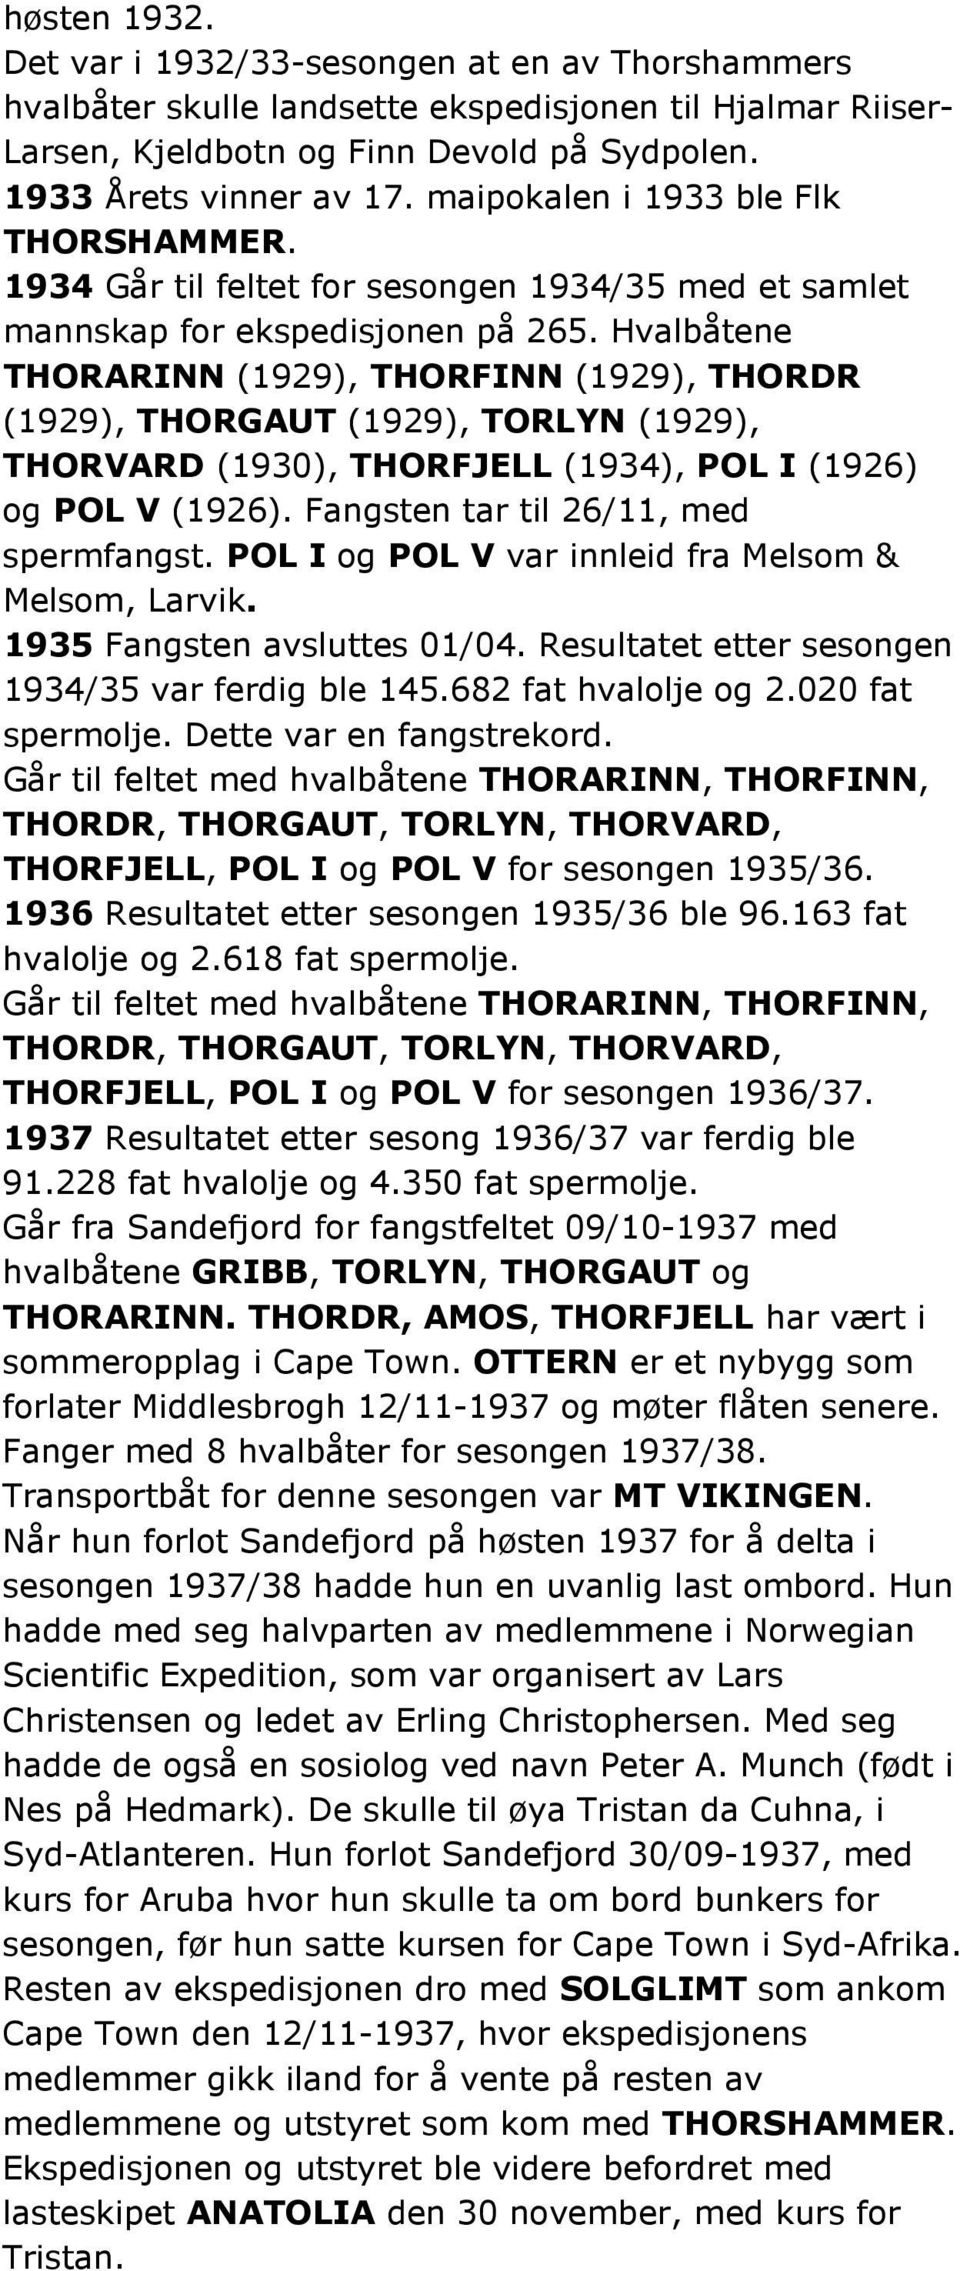 Hvalbåtene THORARINN (1929), THORFINN (1929), THORDR (1929), THORGAUT (1929), TORLYN (1929), THORVARD (1930), THORFJELL (1934), POL I (1926) og POL V (1926). Fangsten tar til 26/11, med spermfangst.